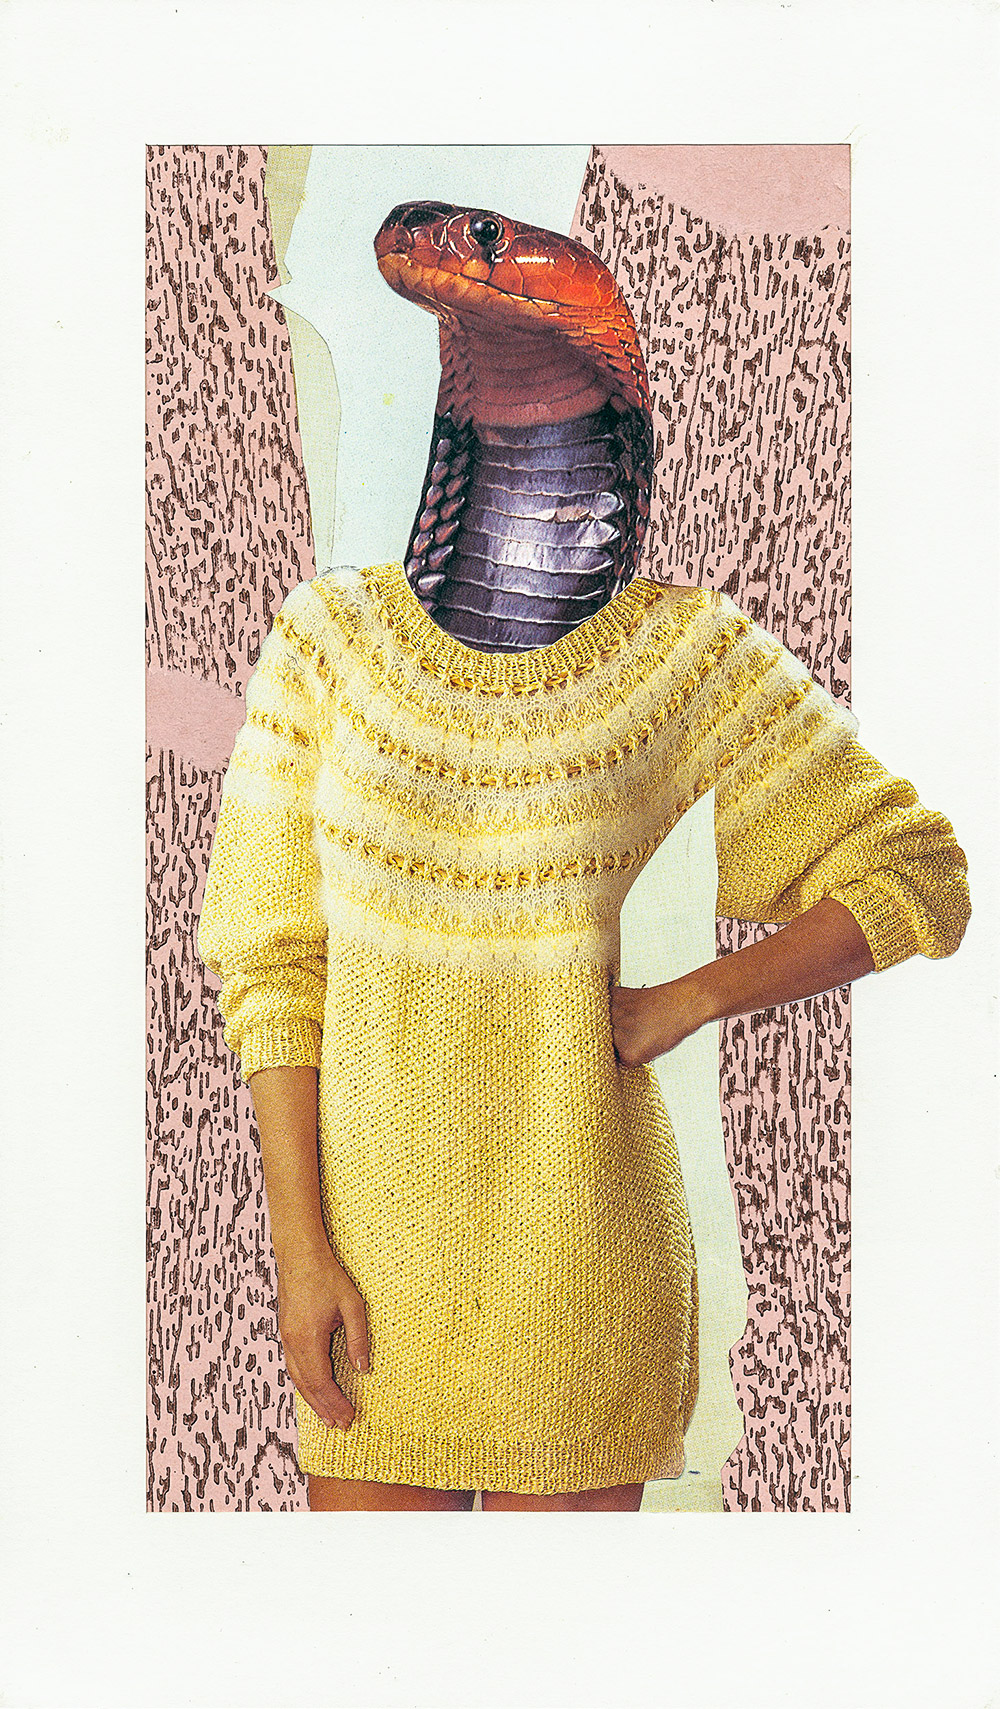 düstere Collage mit zierlicher Frau die statt einem Kopf eine Muschel trägt - original Tiere mit Klamotten, Kleidung und Hosen Foto Collage von Markus Wuelbern (Wülbern) mit Holzrahmen